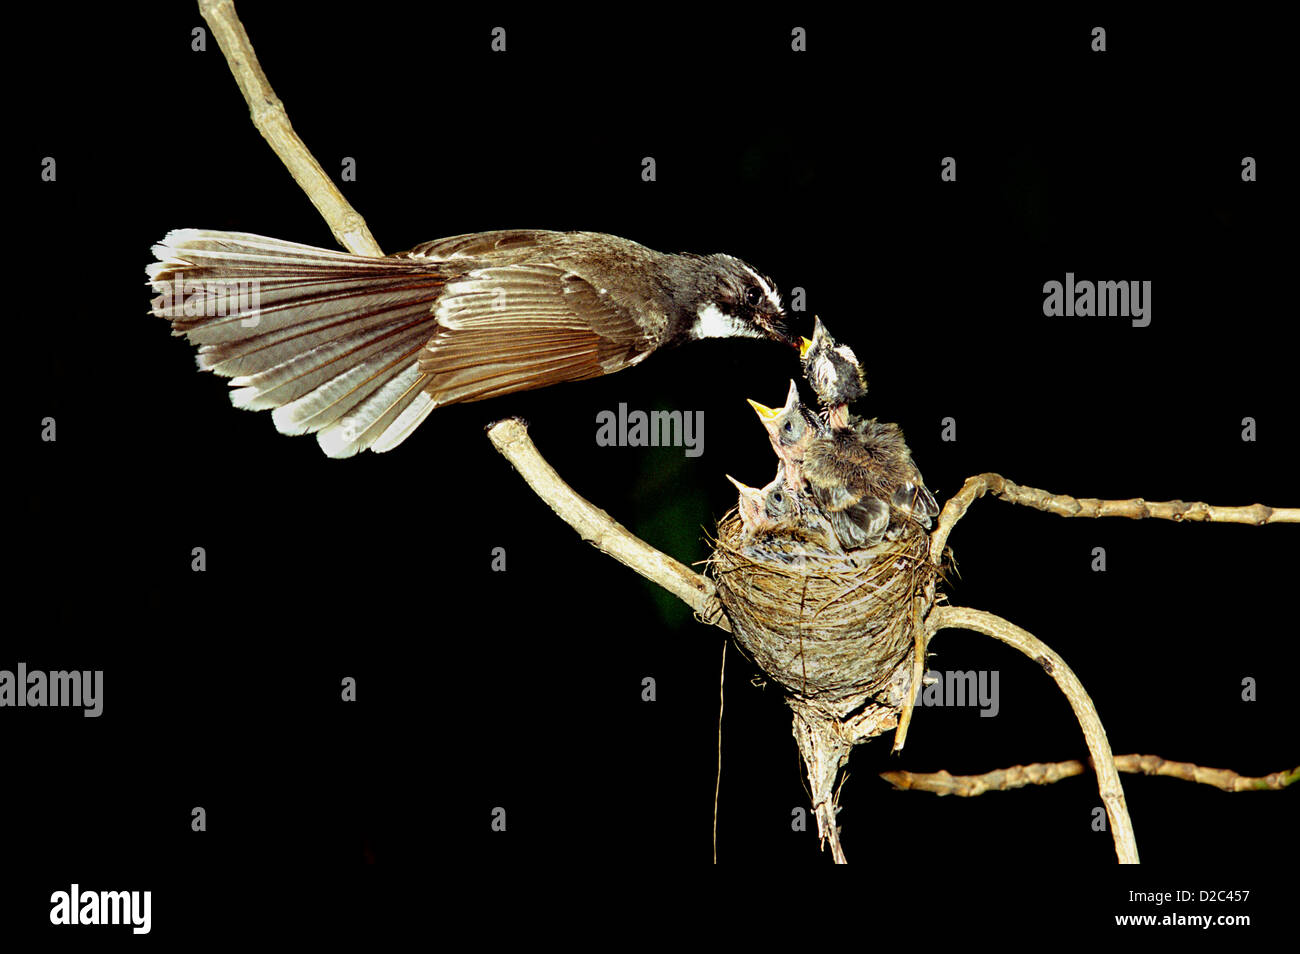 Feeding Fantail Fly Catcher Birds At Sanjay Gandhi National Park, Borivali, Maharashtra, India Stock Photo